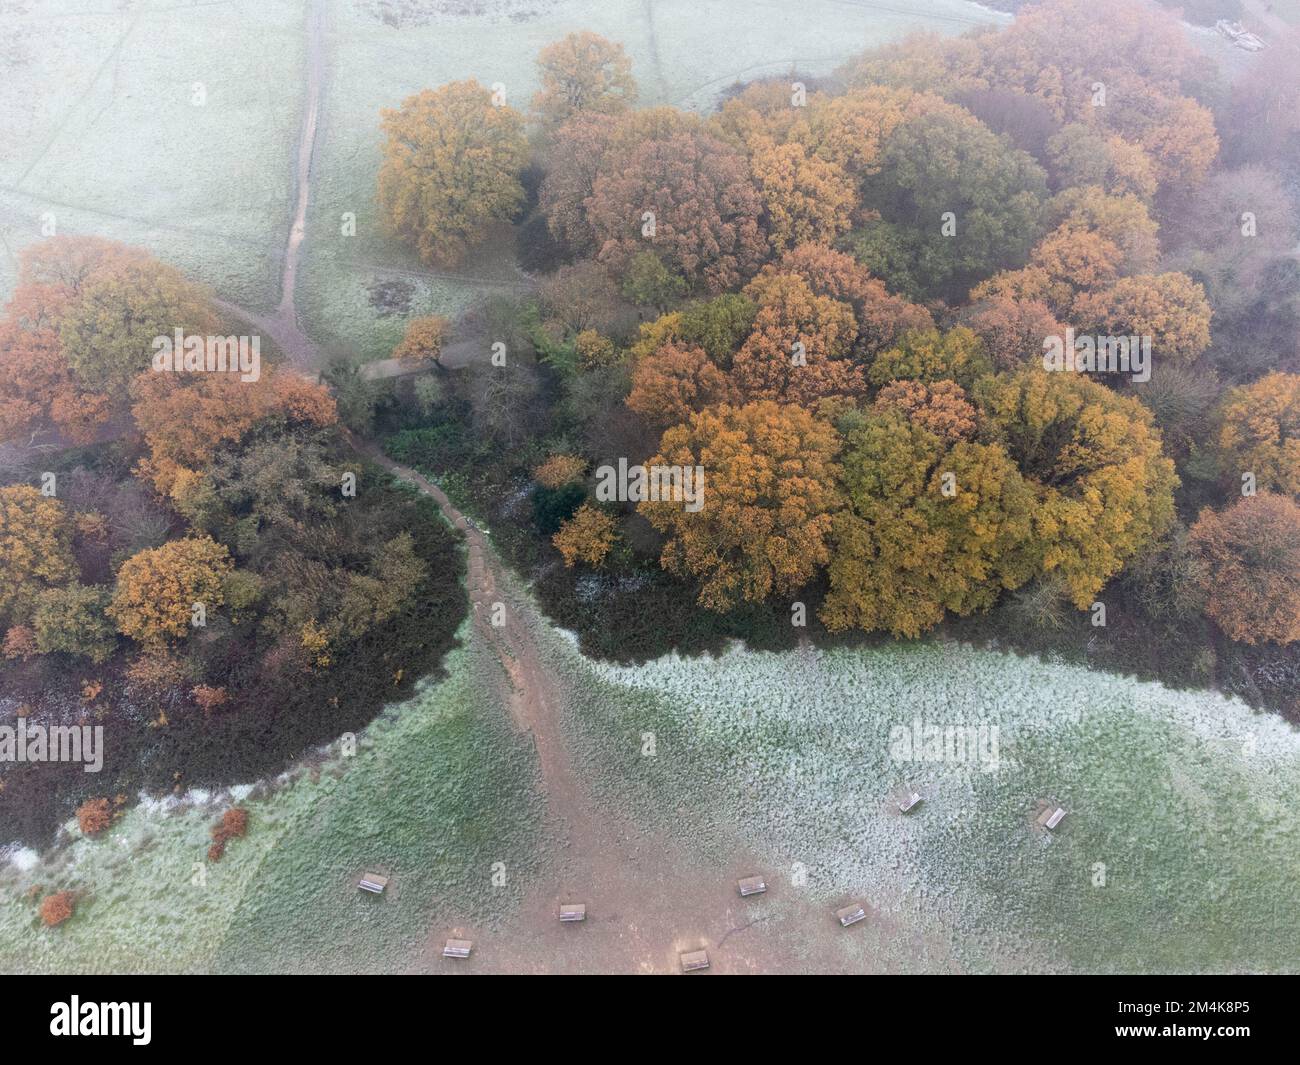 Hampstead Heath è coperto di gelo e nebbia pesante questa mattina, come visto dall'alto. Immagine scattata il 9th dicembre 2022. © Belinda Jiao jiao.bilin@gmail.co Foto Stock